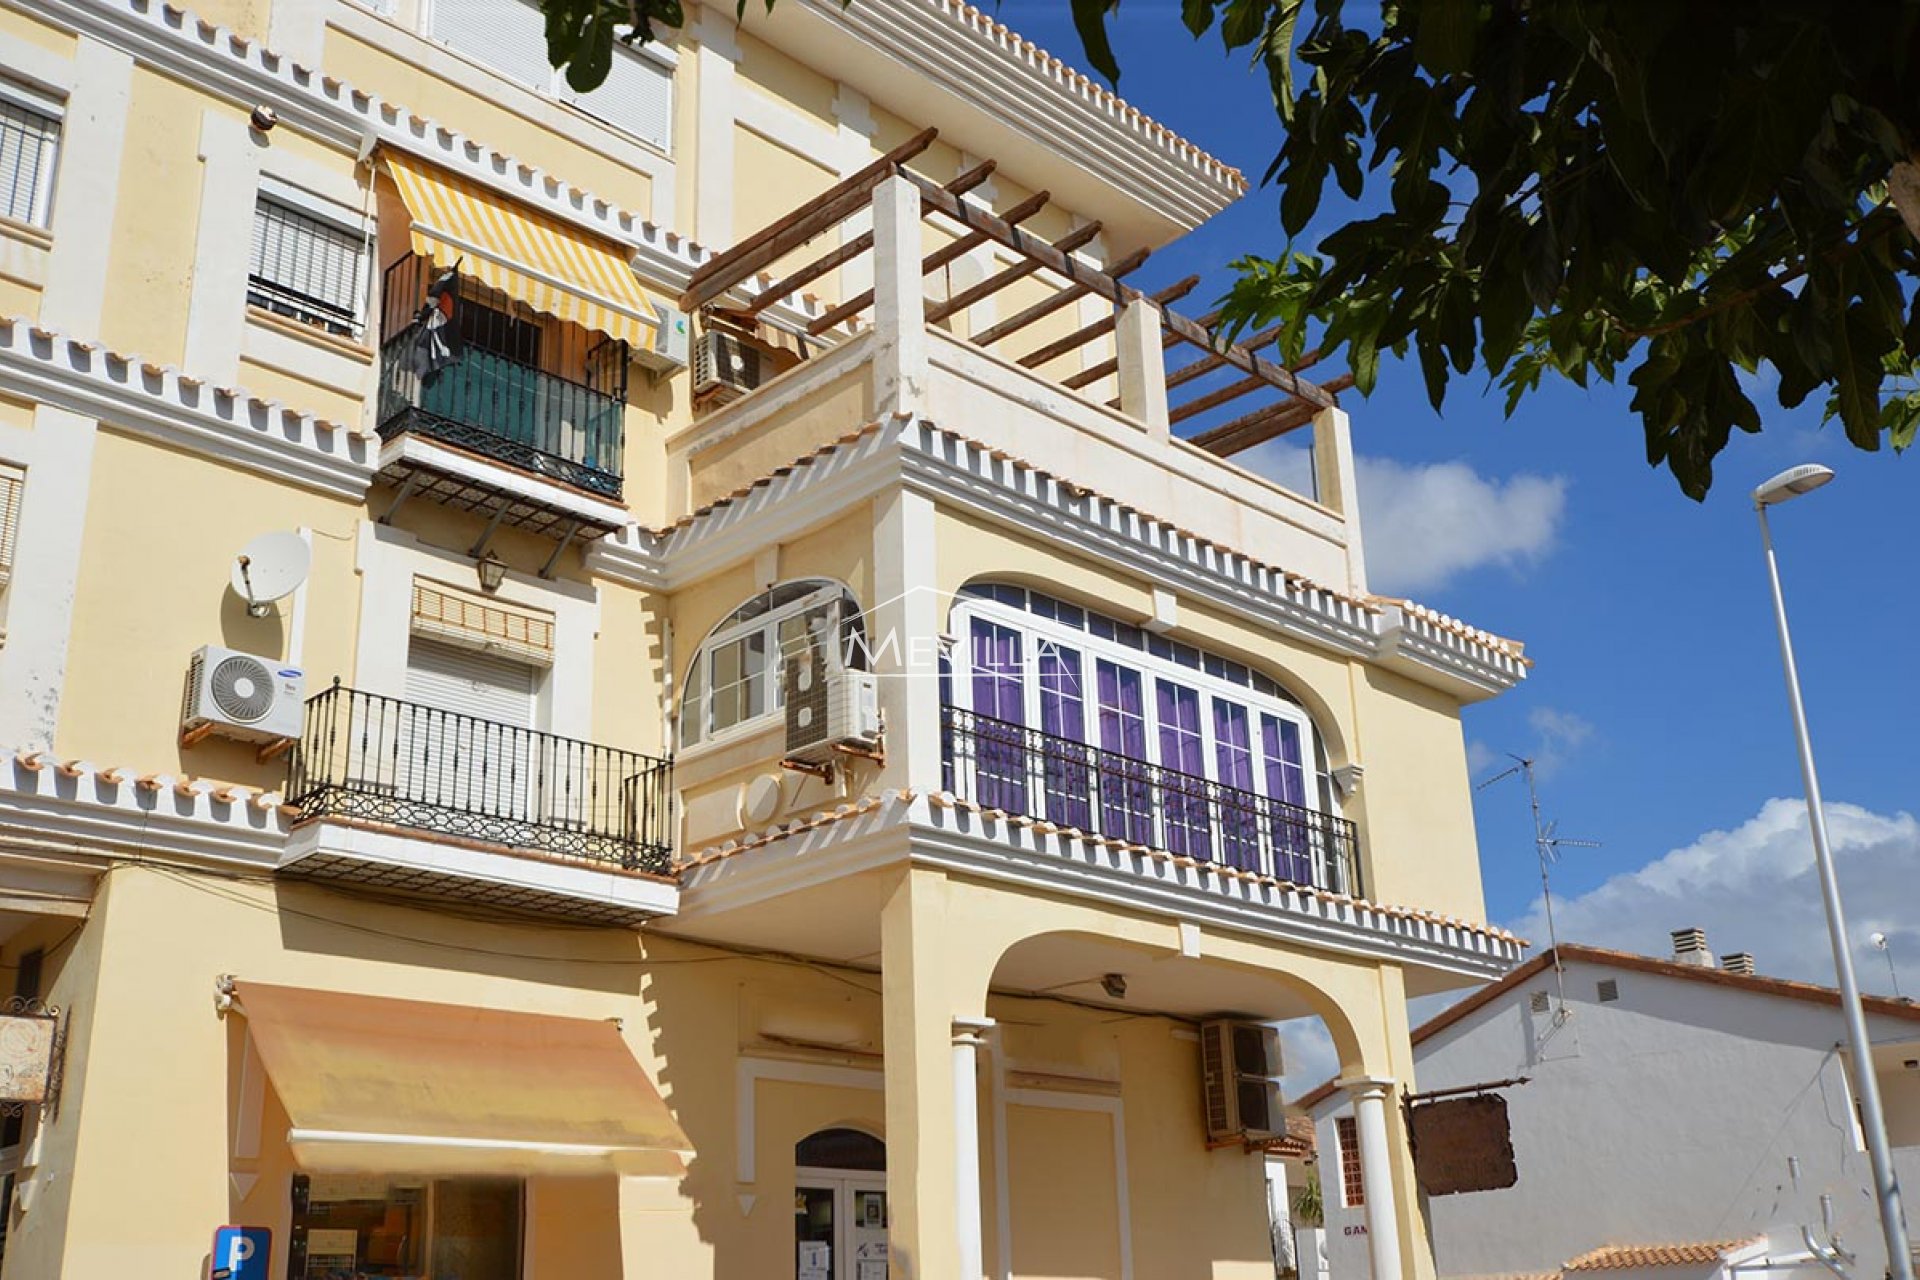 Apartment with sea views for sale in Torre de la Horadada.